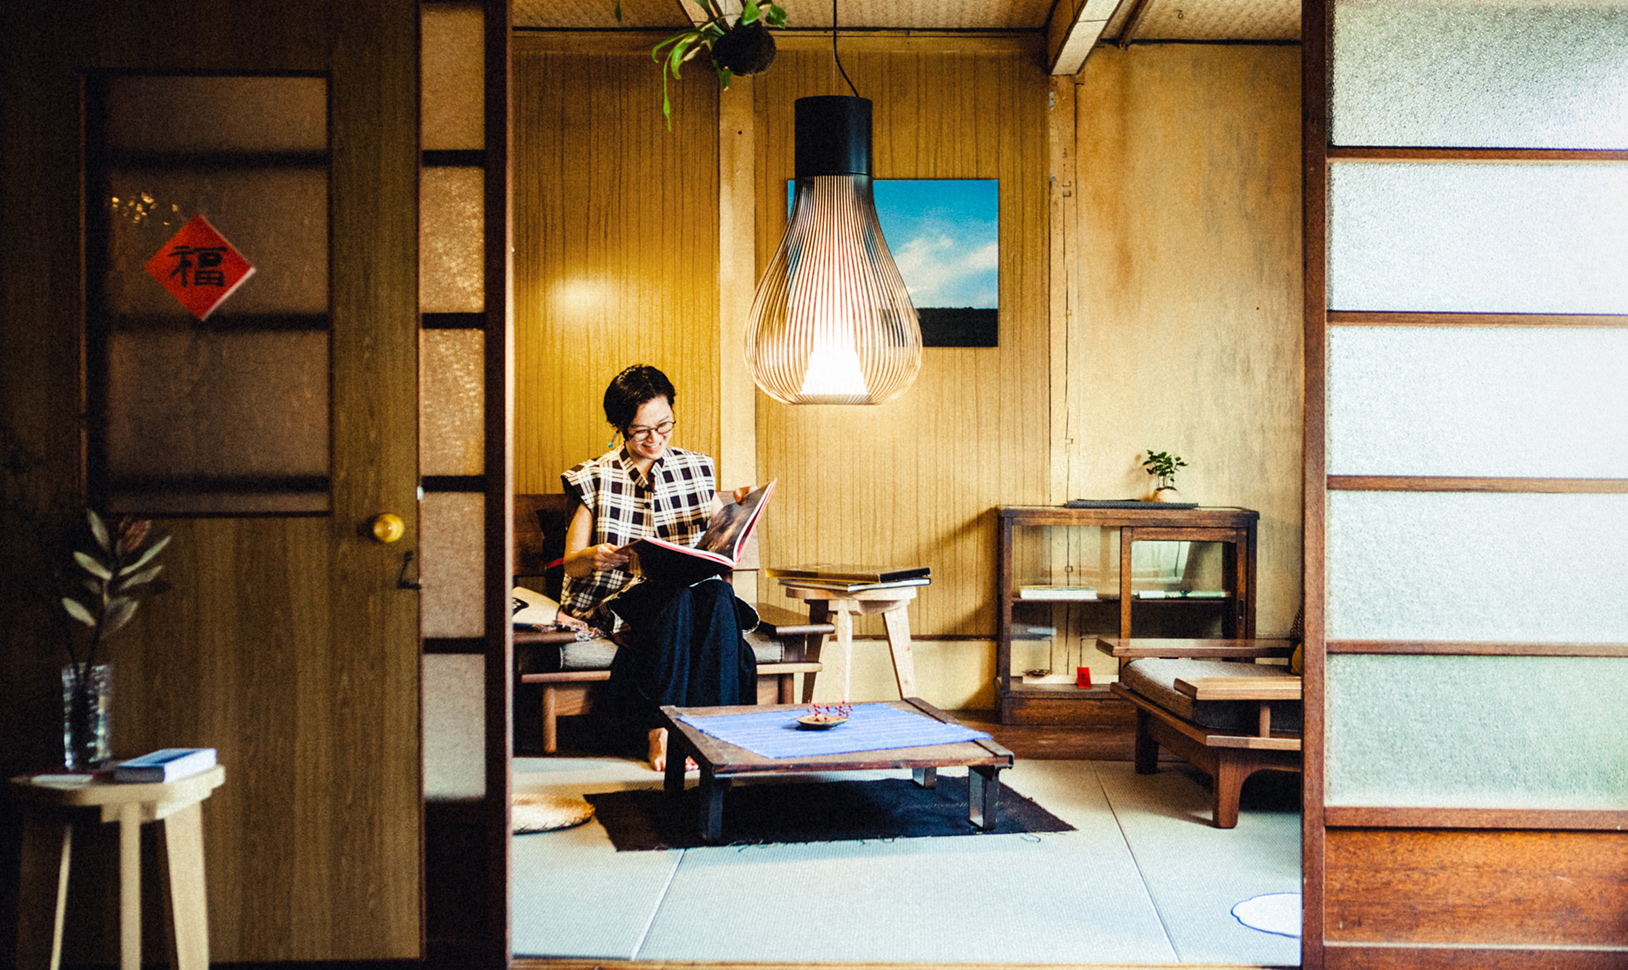 古書店「二手舎 京都」兼自宅 × ON・OFFが入り混じる店主の暮らし